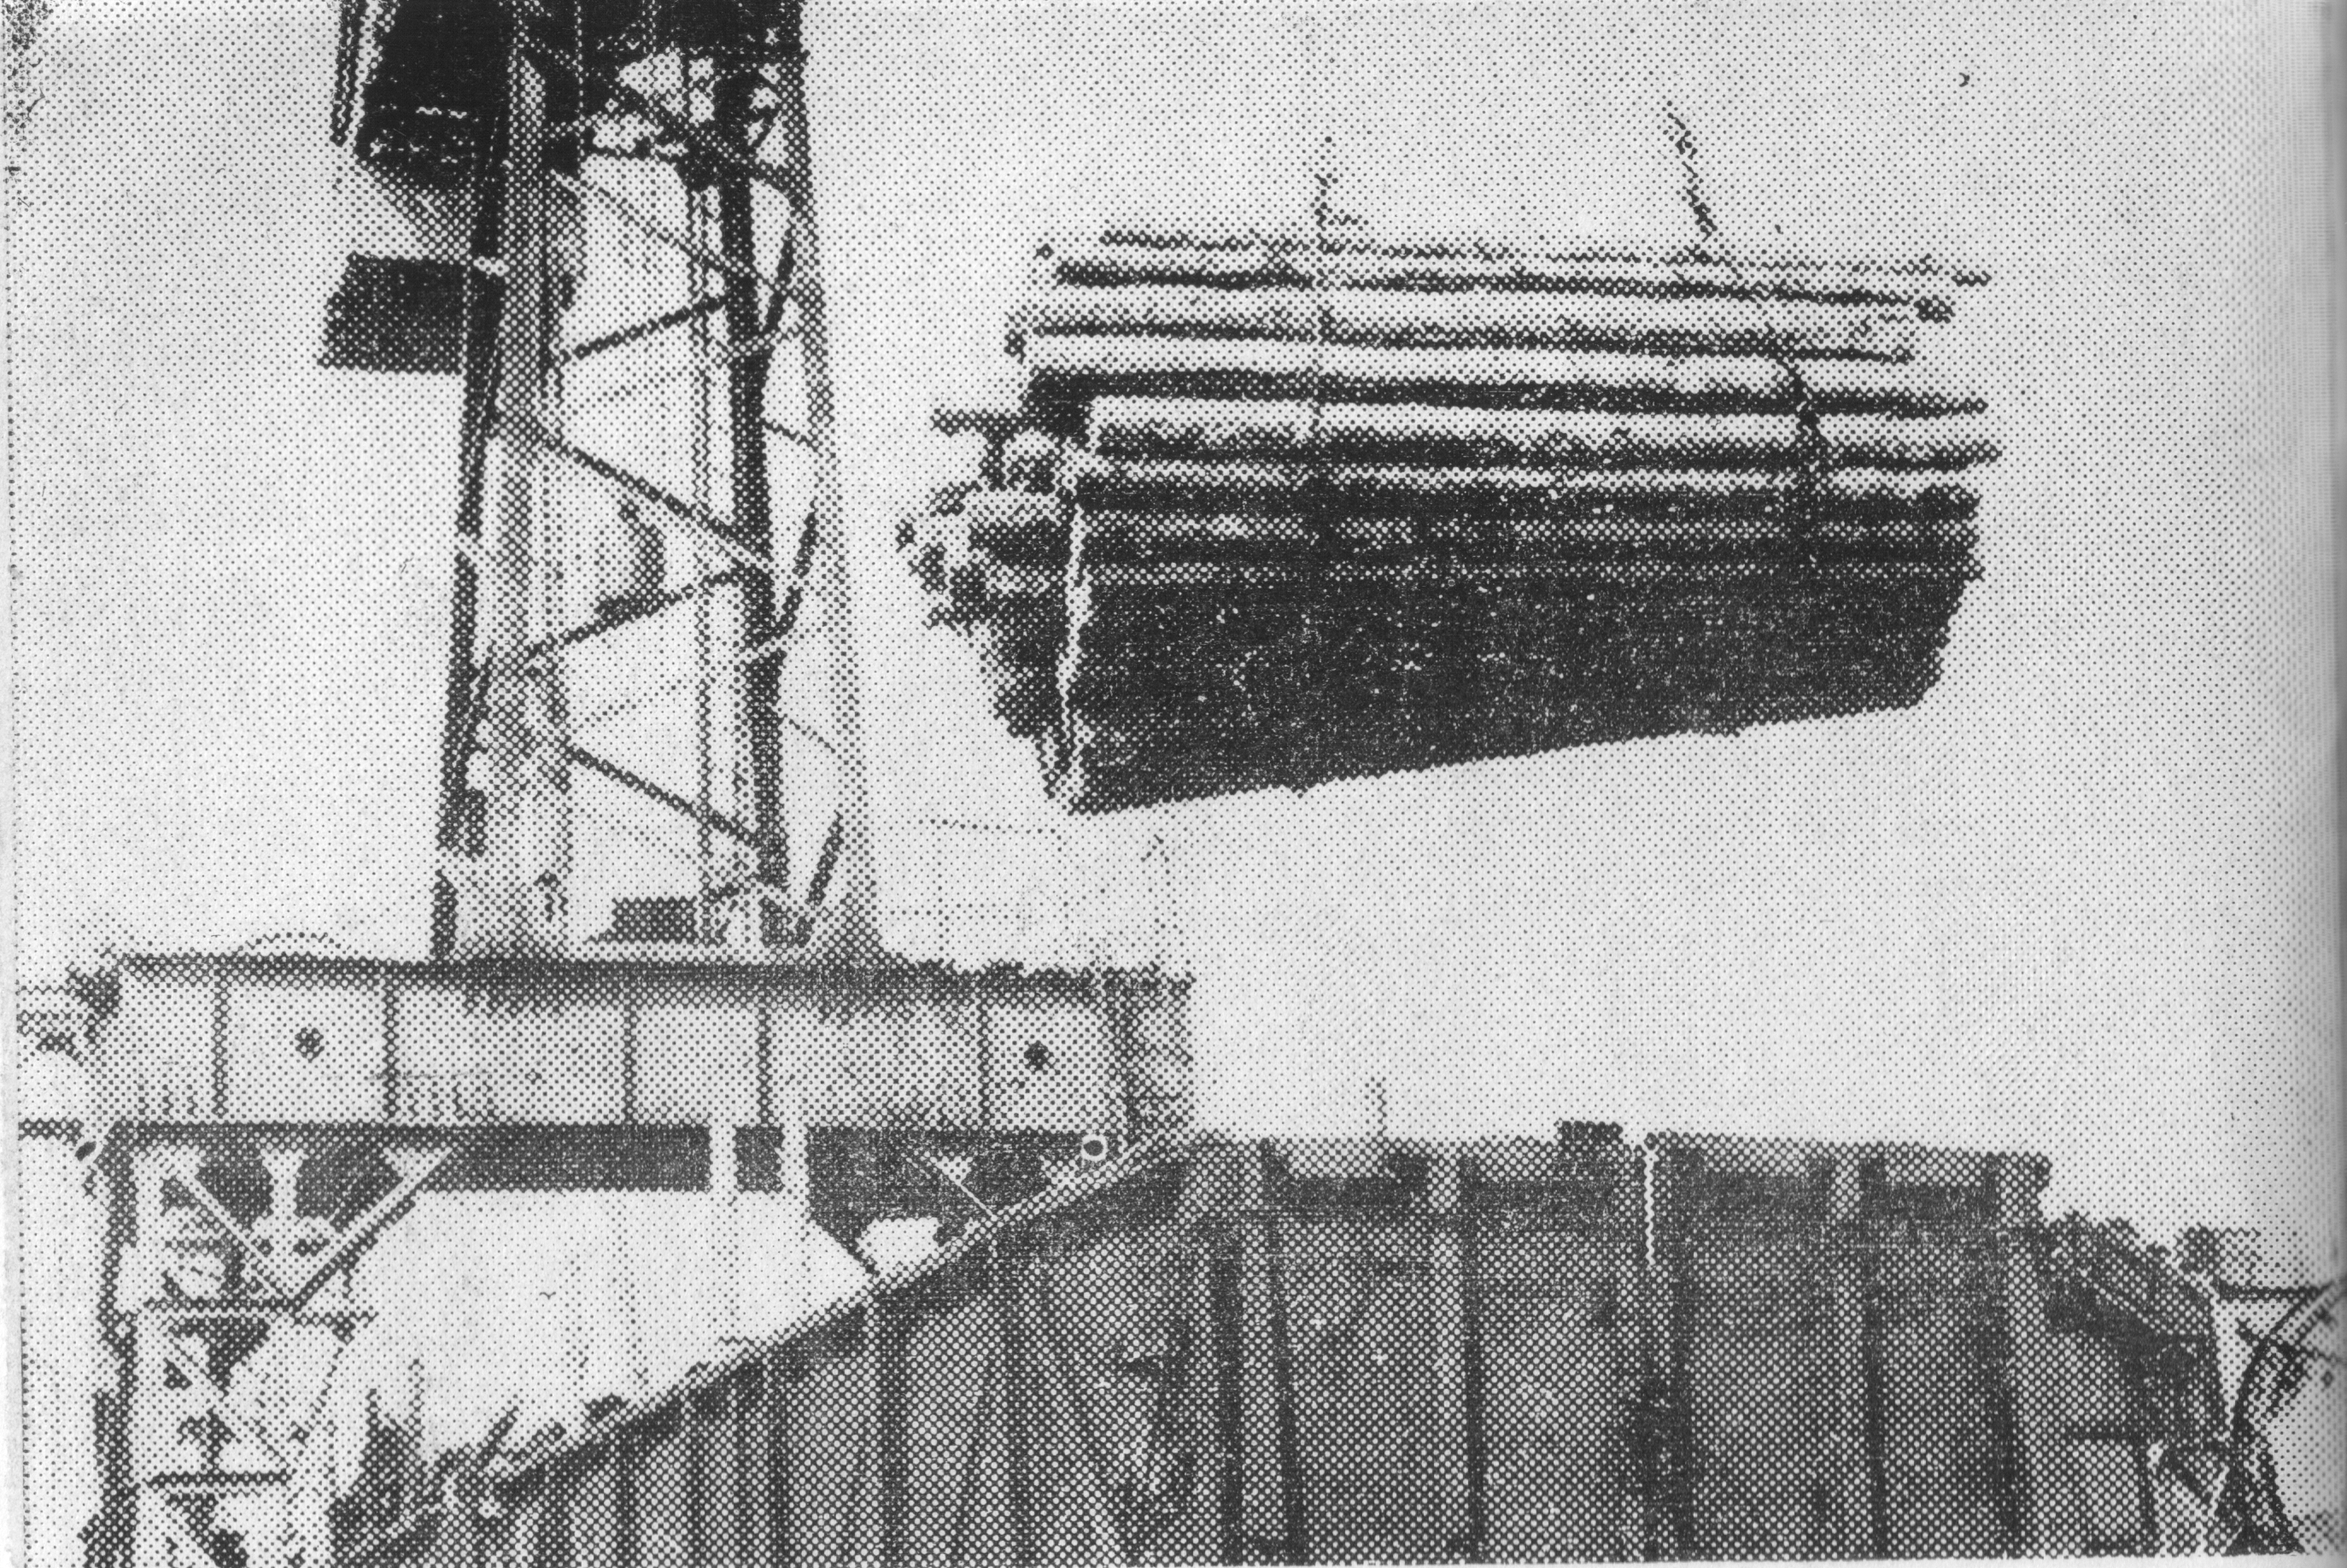 Бурятский МДК. 1969 г. Вводится впервые 2 полуавтоматические поточные линии по раскряжевке хлыстов ПЛХ-3 мощьностью 150 тыс м3.